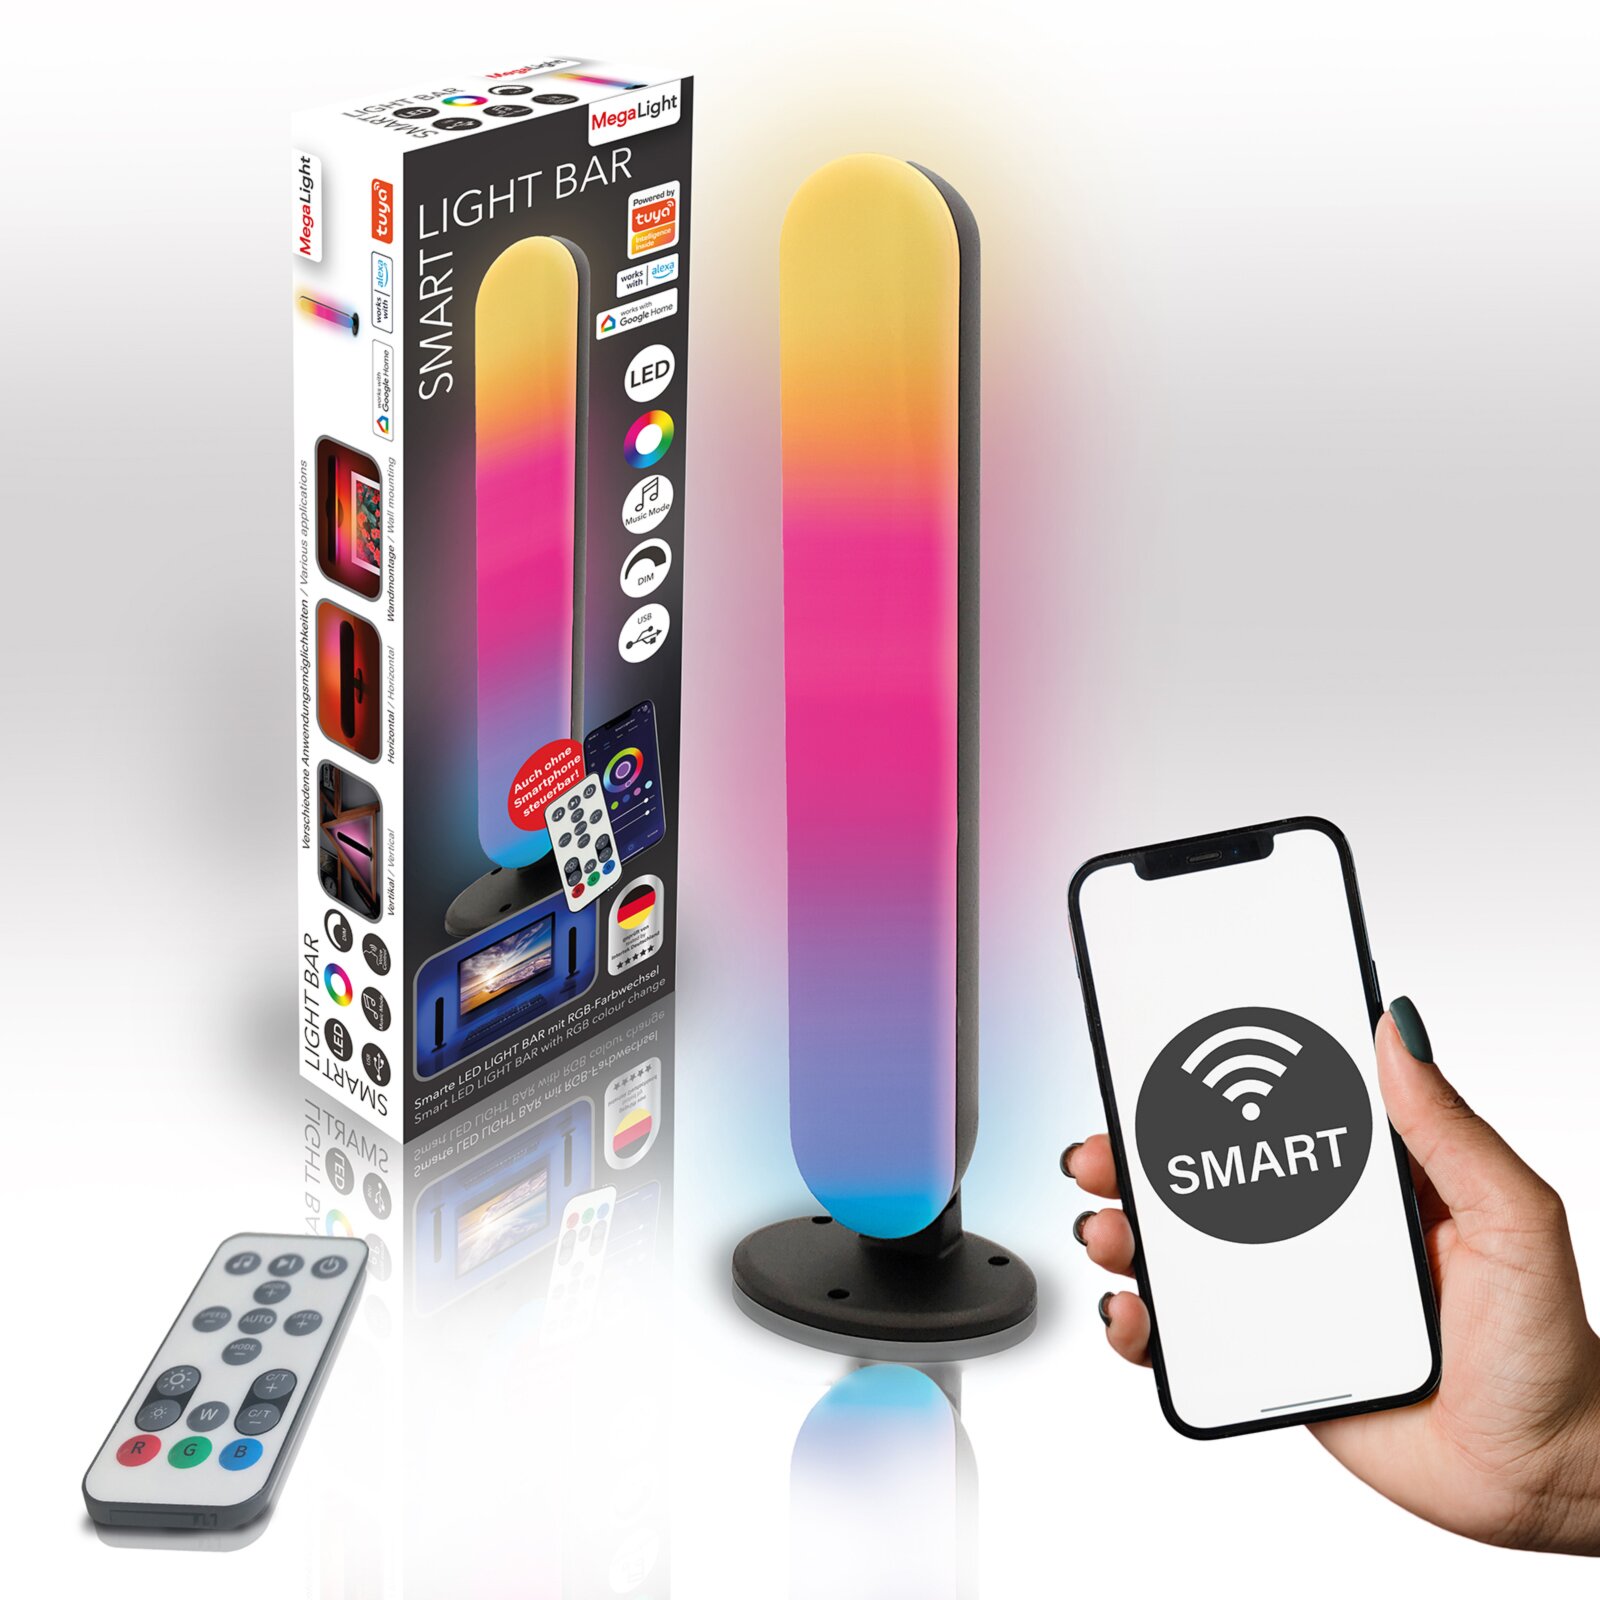 SMART-LED-RGB-Lightbar - dimmbar - per App-steuerbar | Online bei ROLLER  kaufen